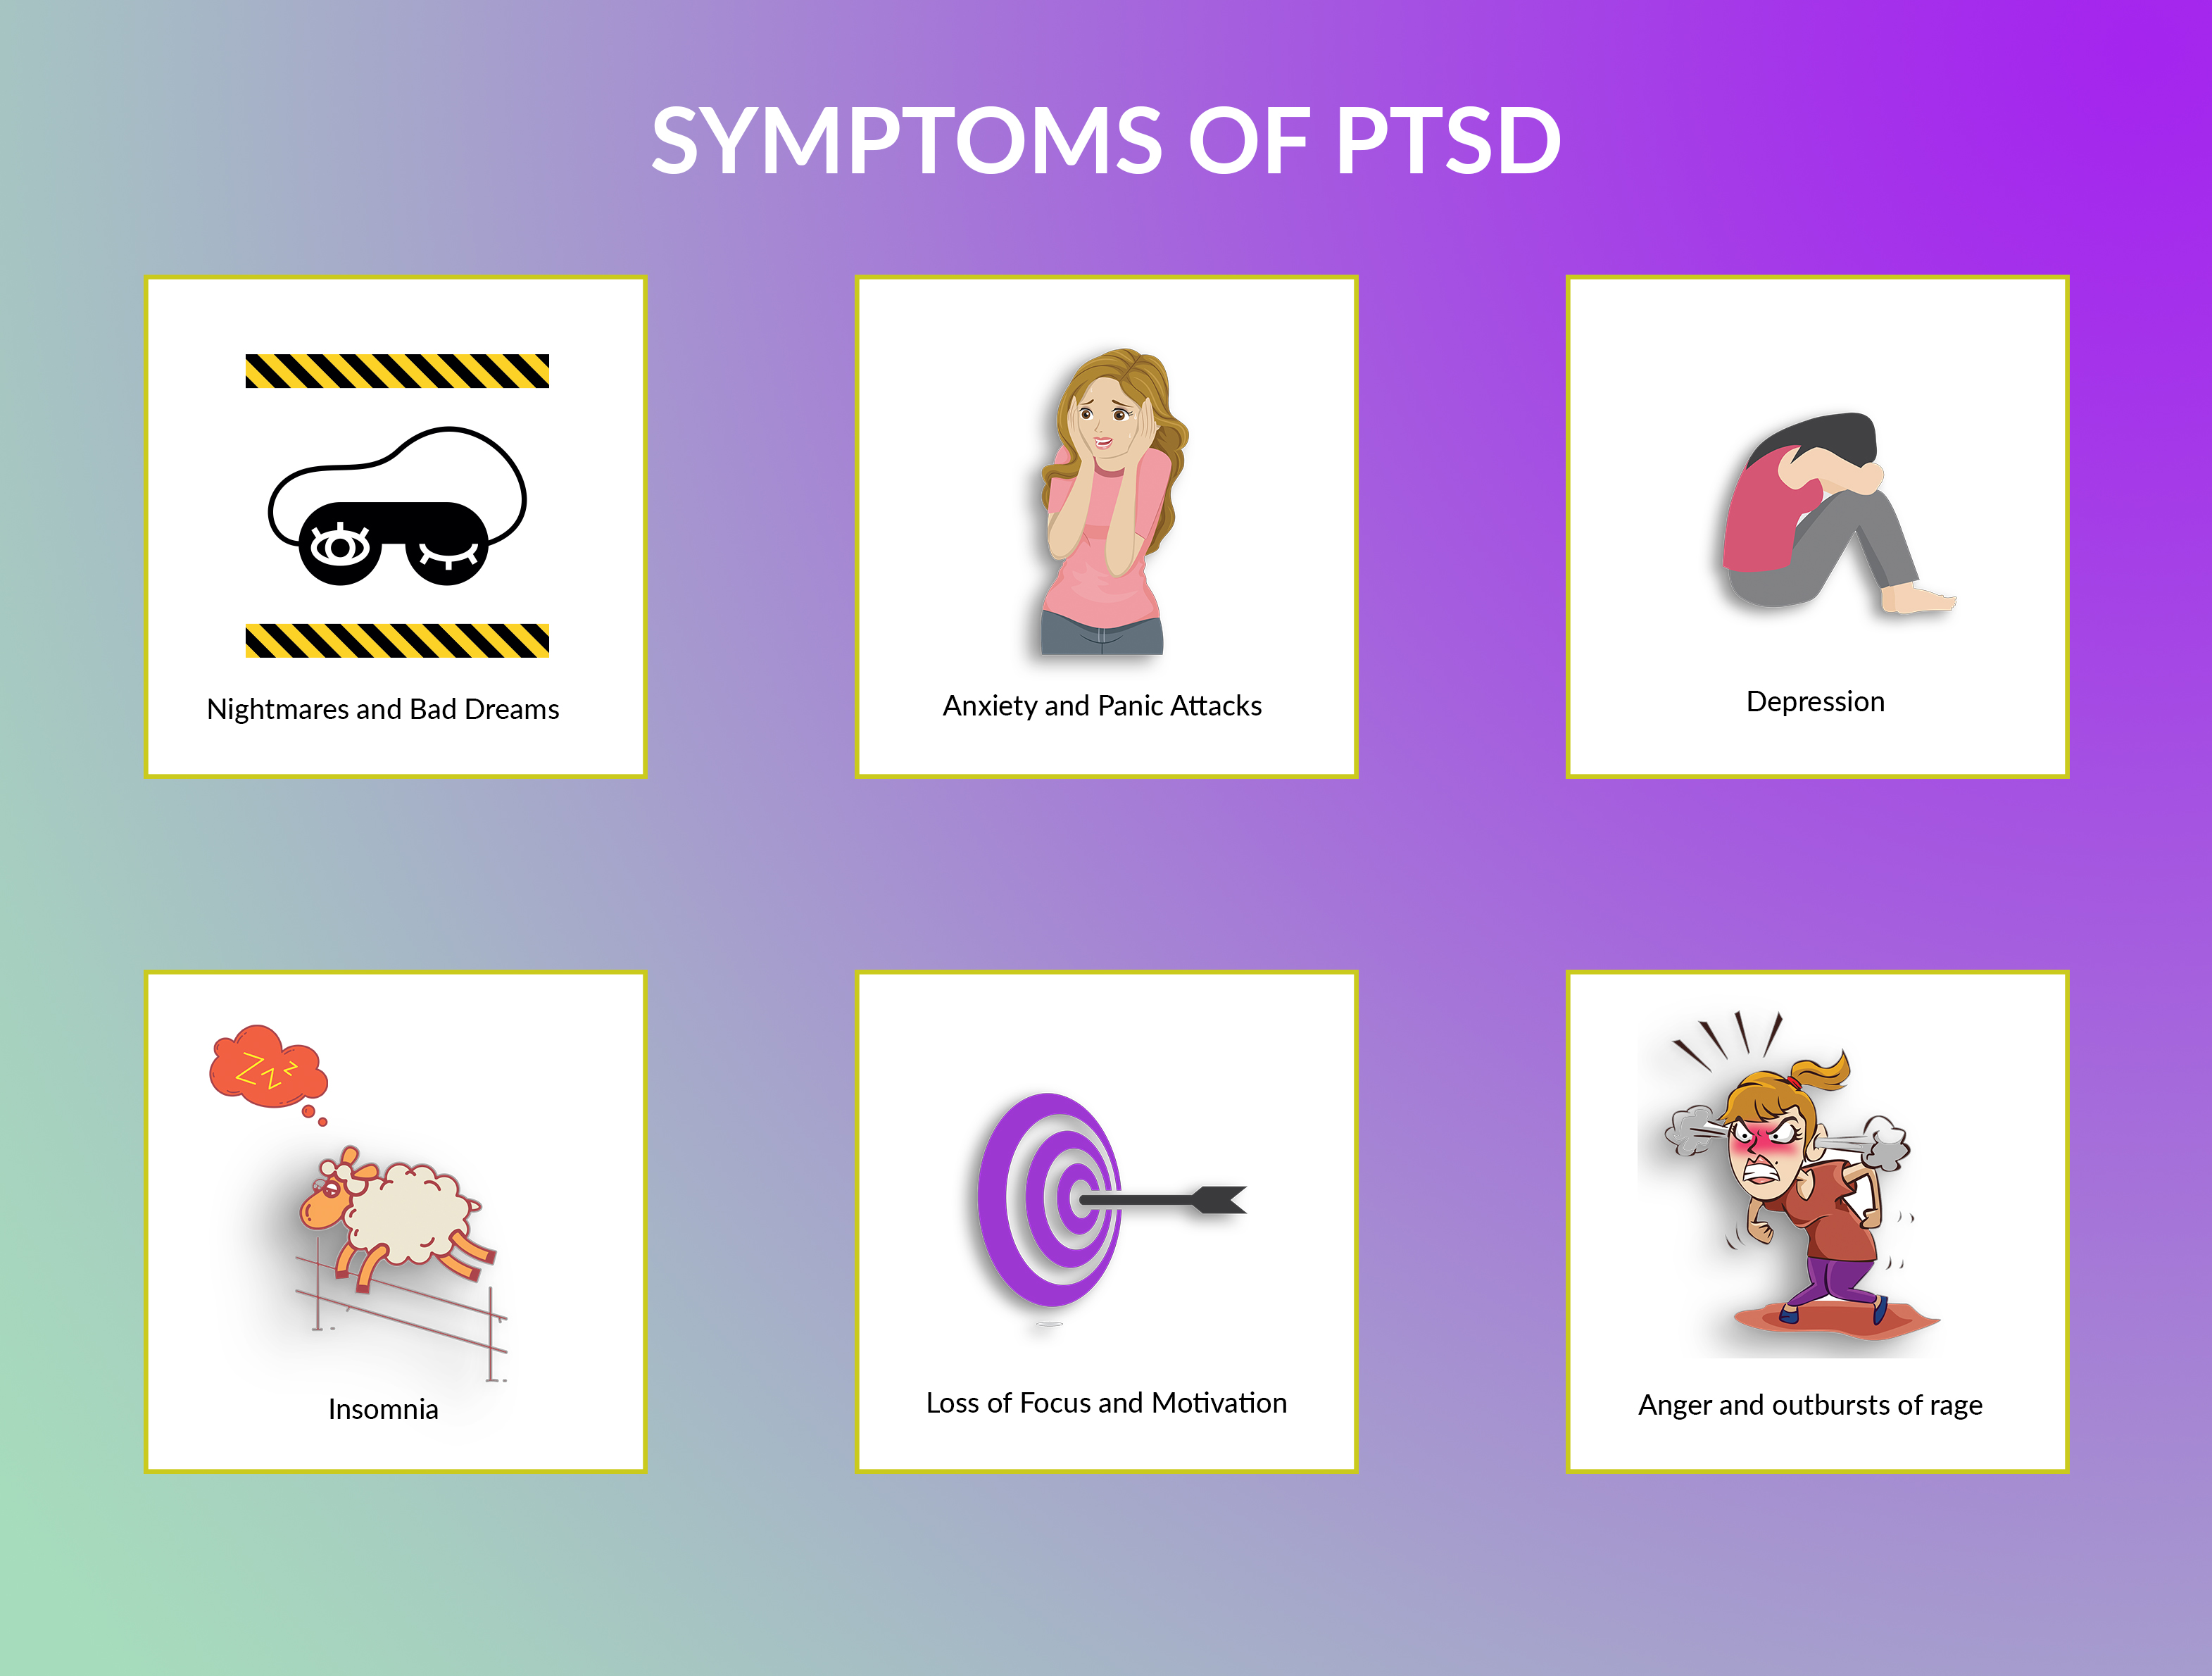 Symptoms of PTSD explained